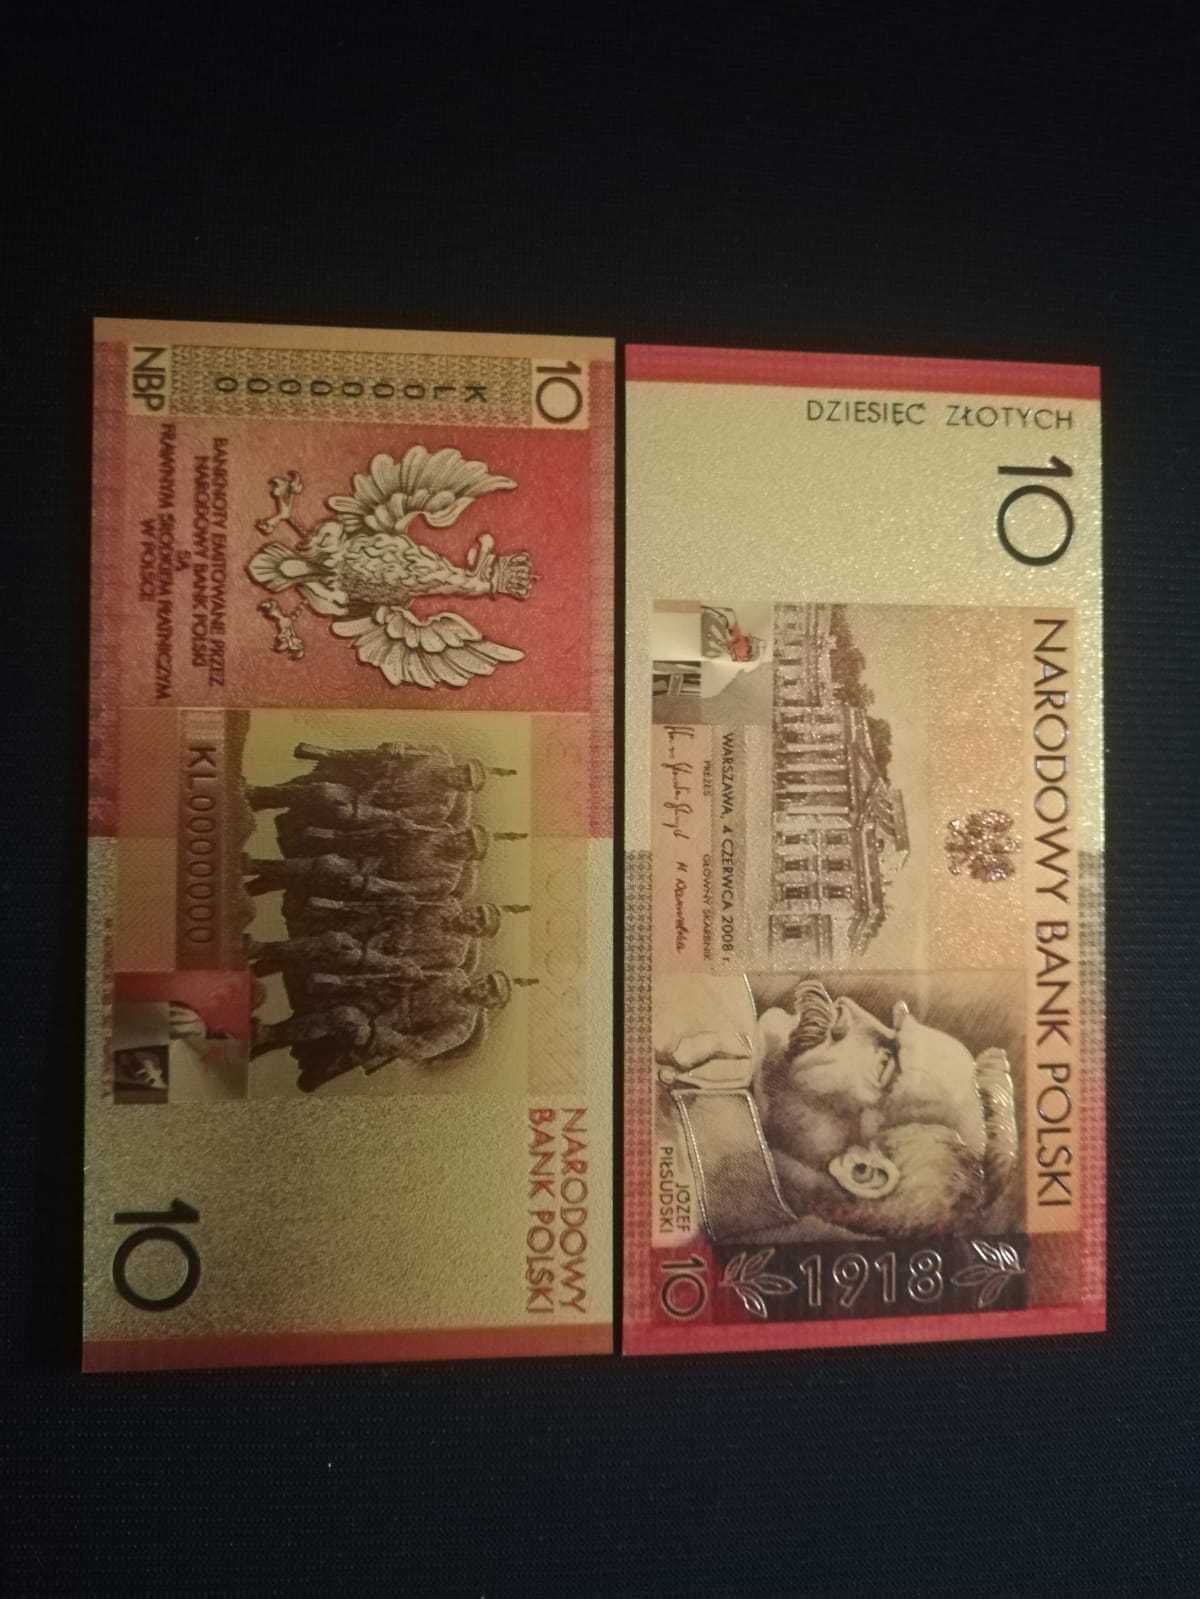 Józef Piłsudski 10 zł - złoty banknot kolekcjonerski